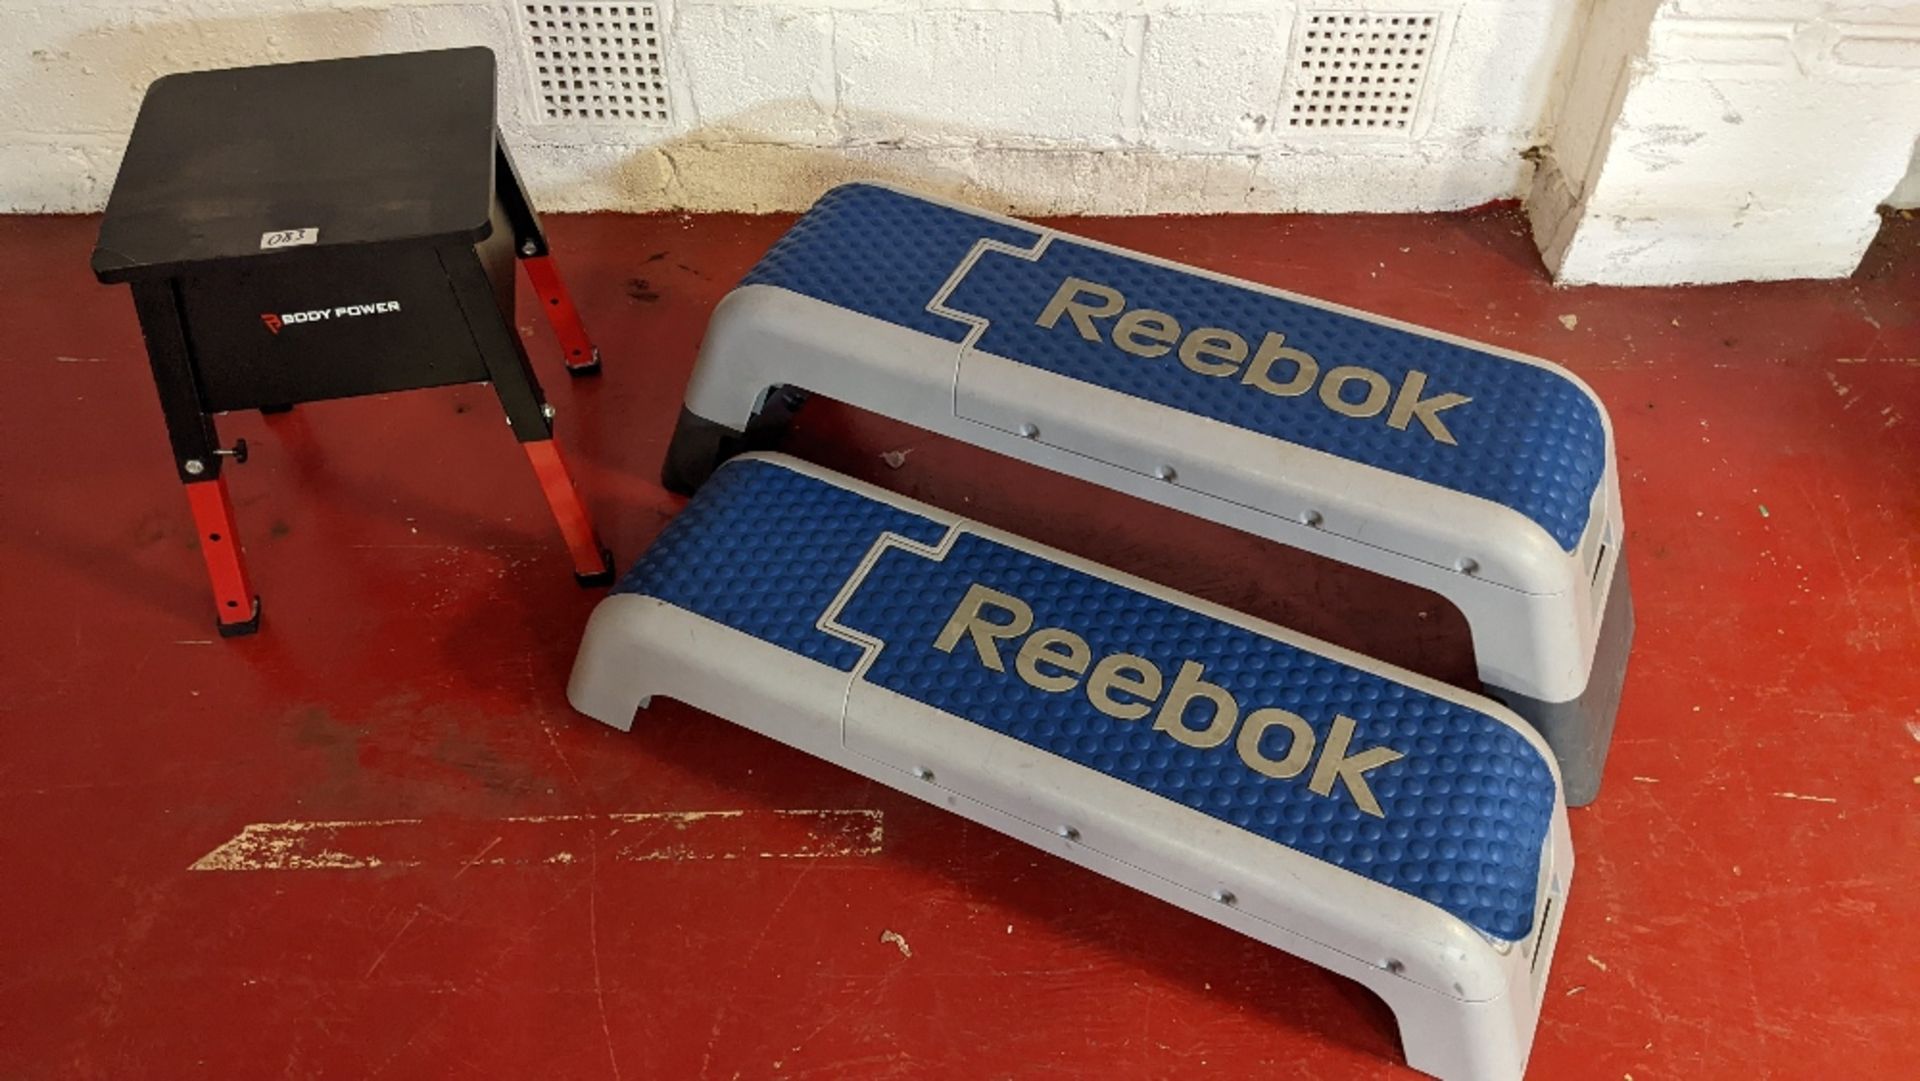 (2) Reebok Steps and (1) Body Power Step Platform